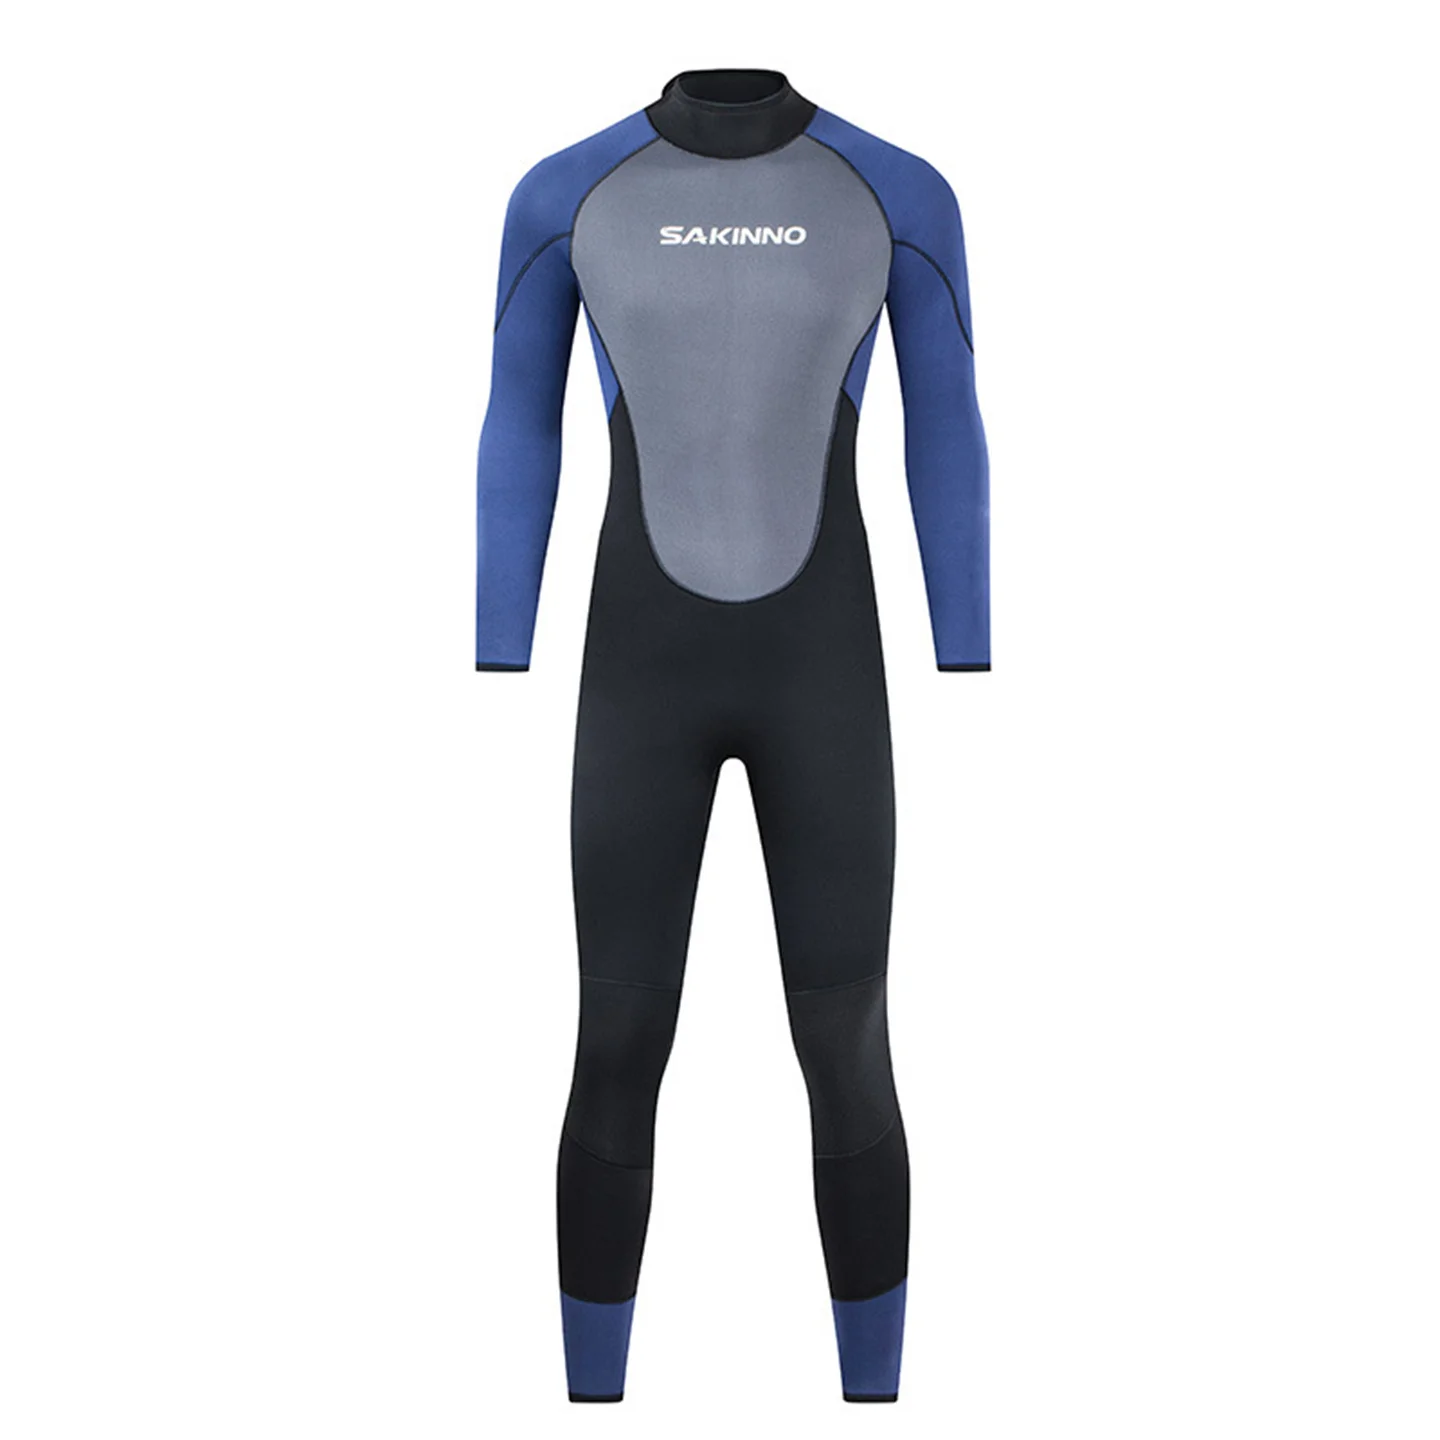 Мужской гидрокостюм из неопрена толщиной 5 мм, цельный костюм для подводного плавания с длинным рукавом и молнией сзади, для серфинга, подводного плавания, зимний термальный купальник